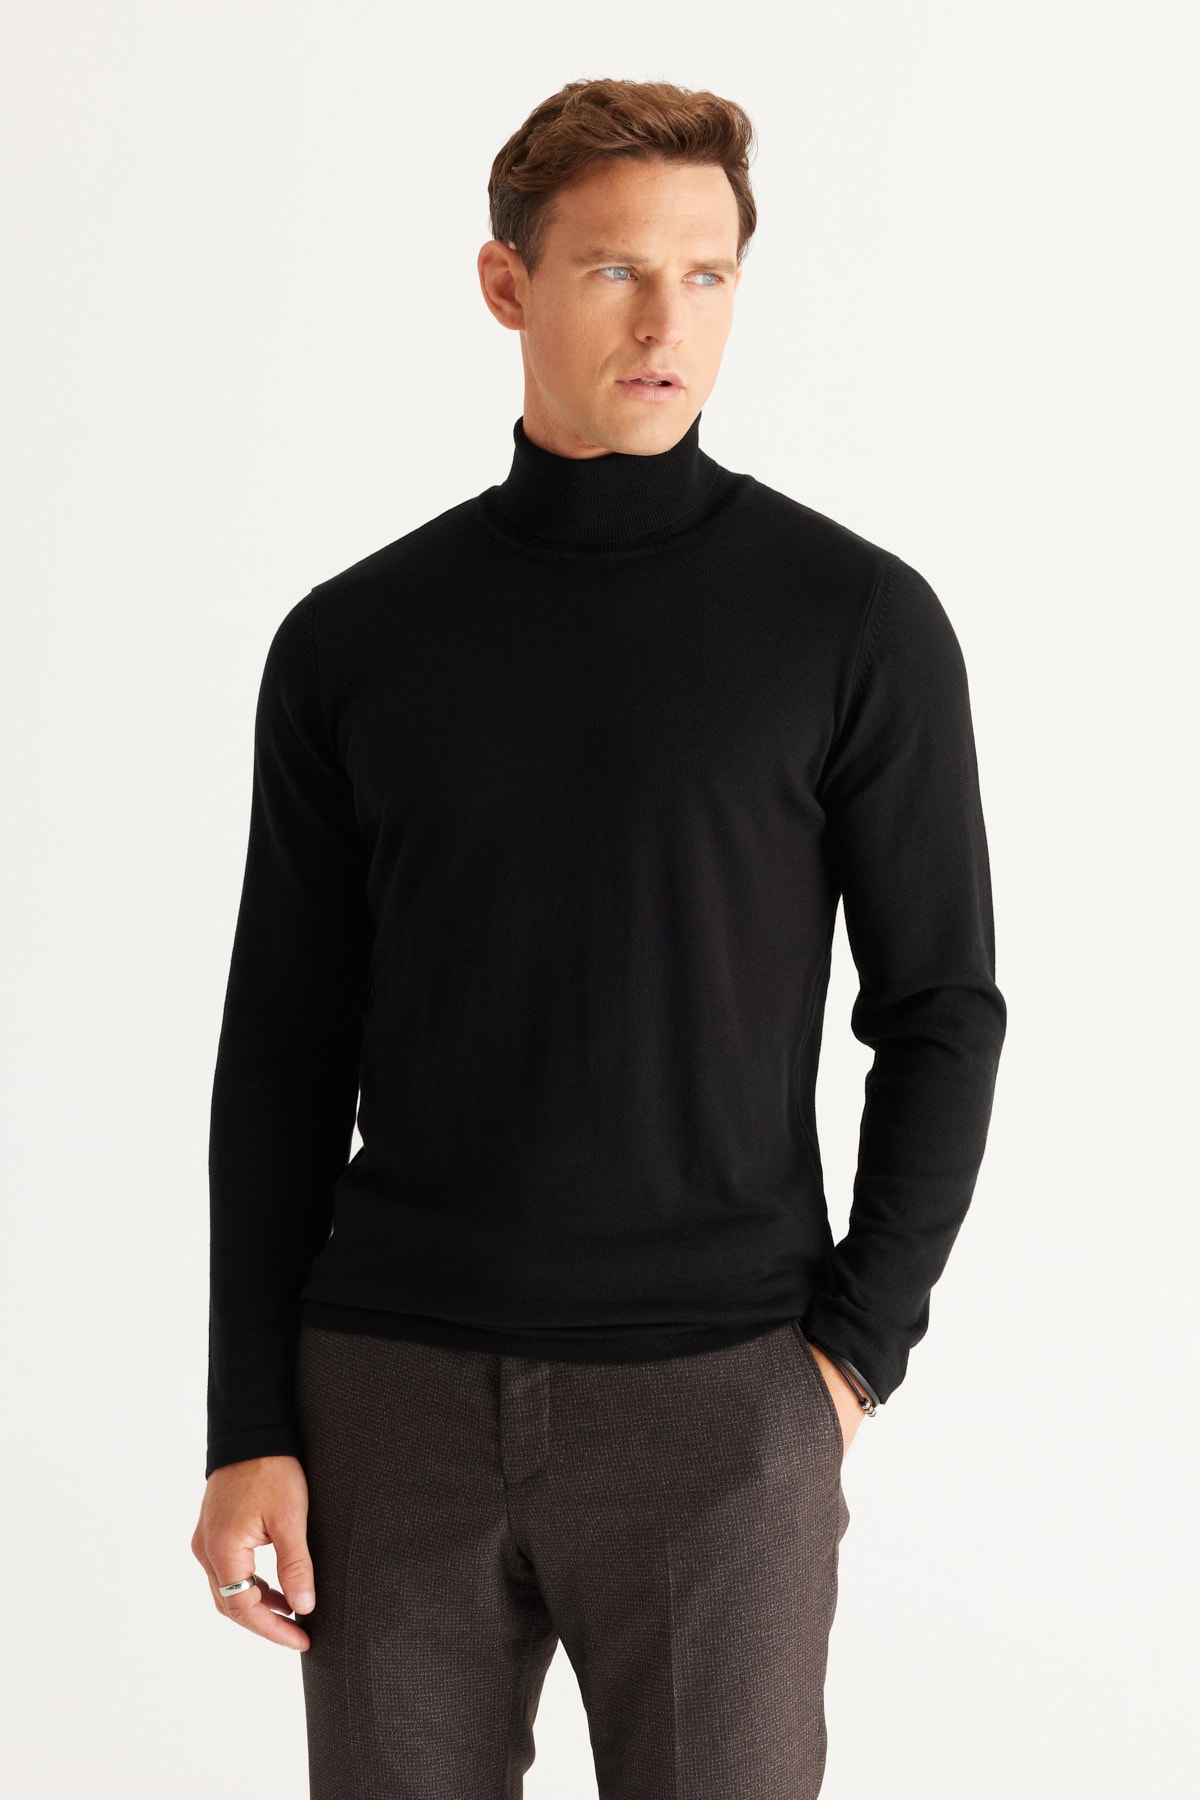 ALTINYILDIZ CLASSICS Men's Black Standard Fit Regular Fit Full Turtleneck Knitwear Sweater